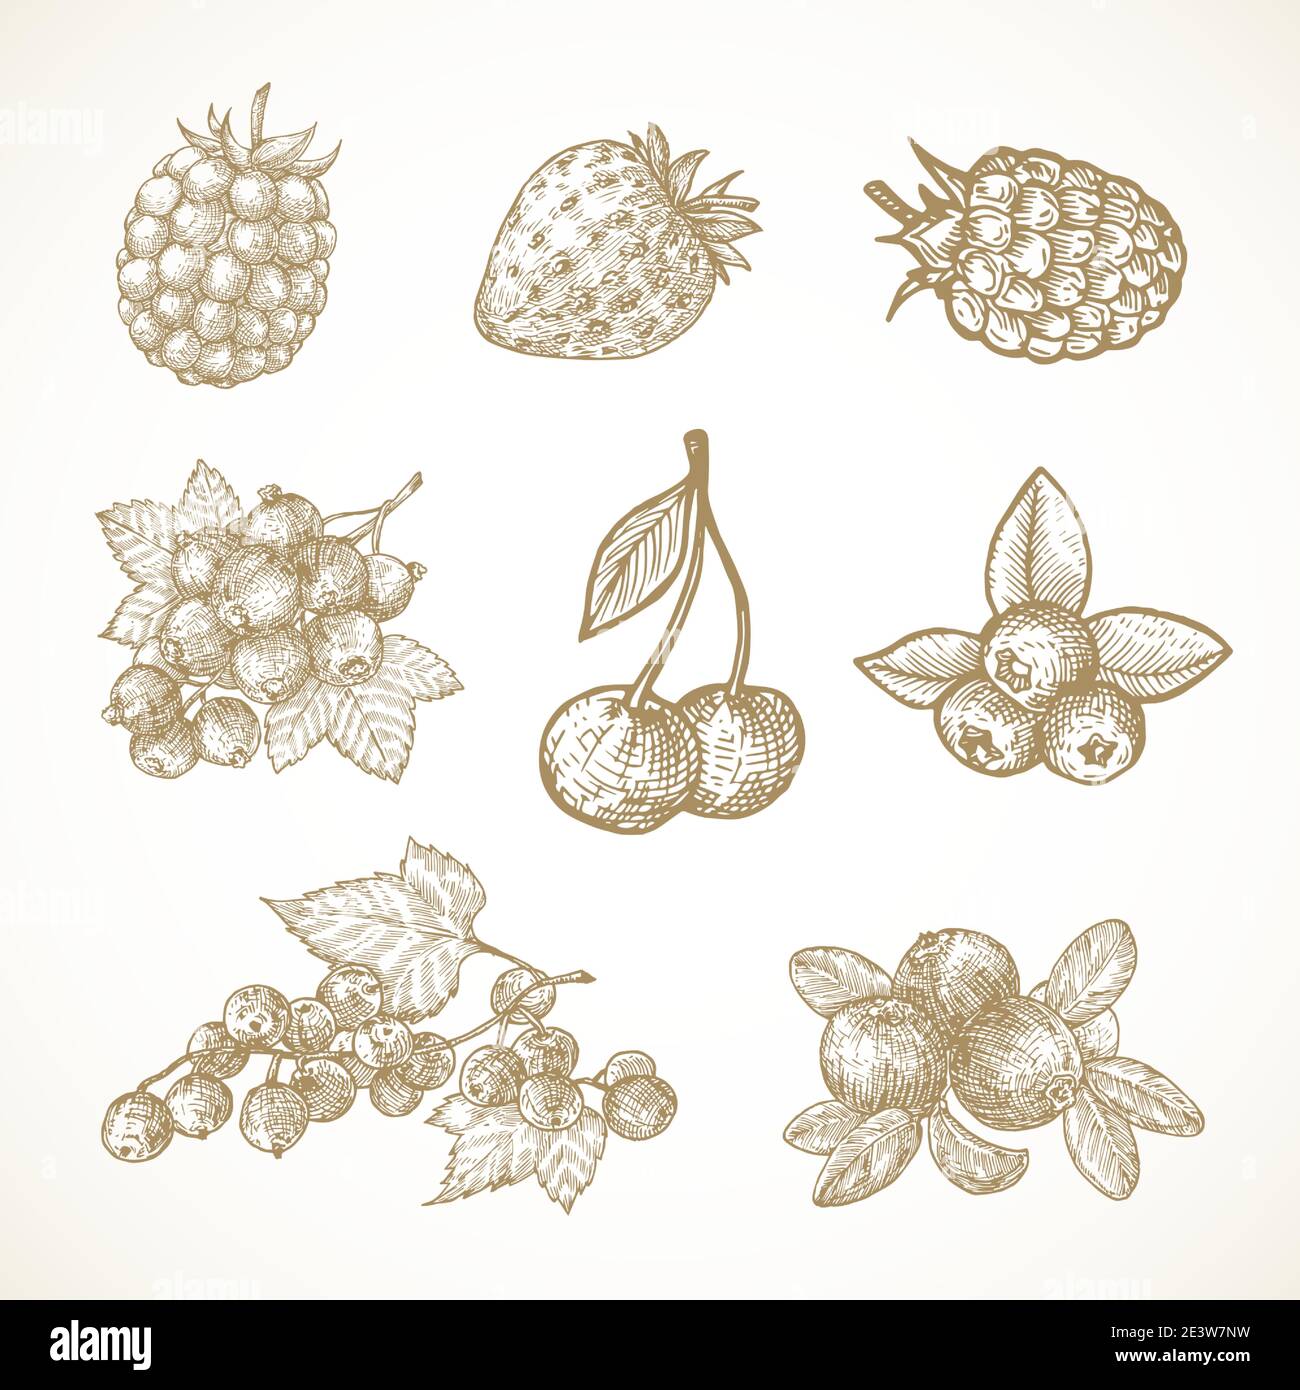 Handgezeichnete Beeren Vektor Illustrationen Kollektion. Cherry, Red-Ribes, Currant, Cranberry, Strawberry und Holunderbeere Skizzen Set. Natürliche Lebensmittel Stock Vektor